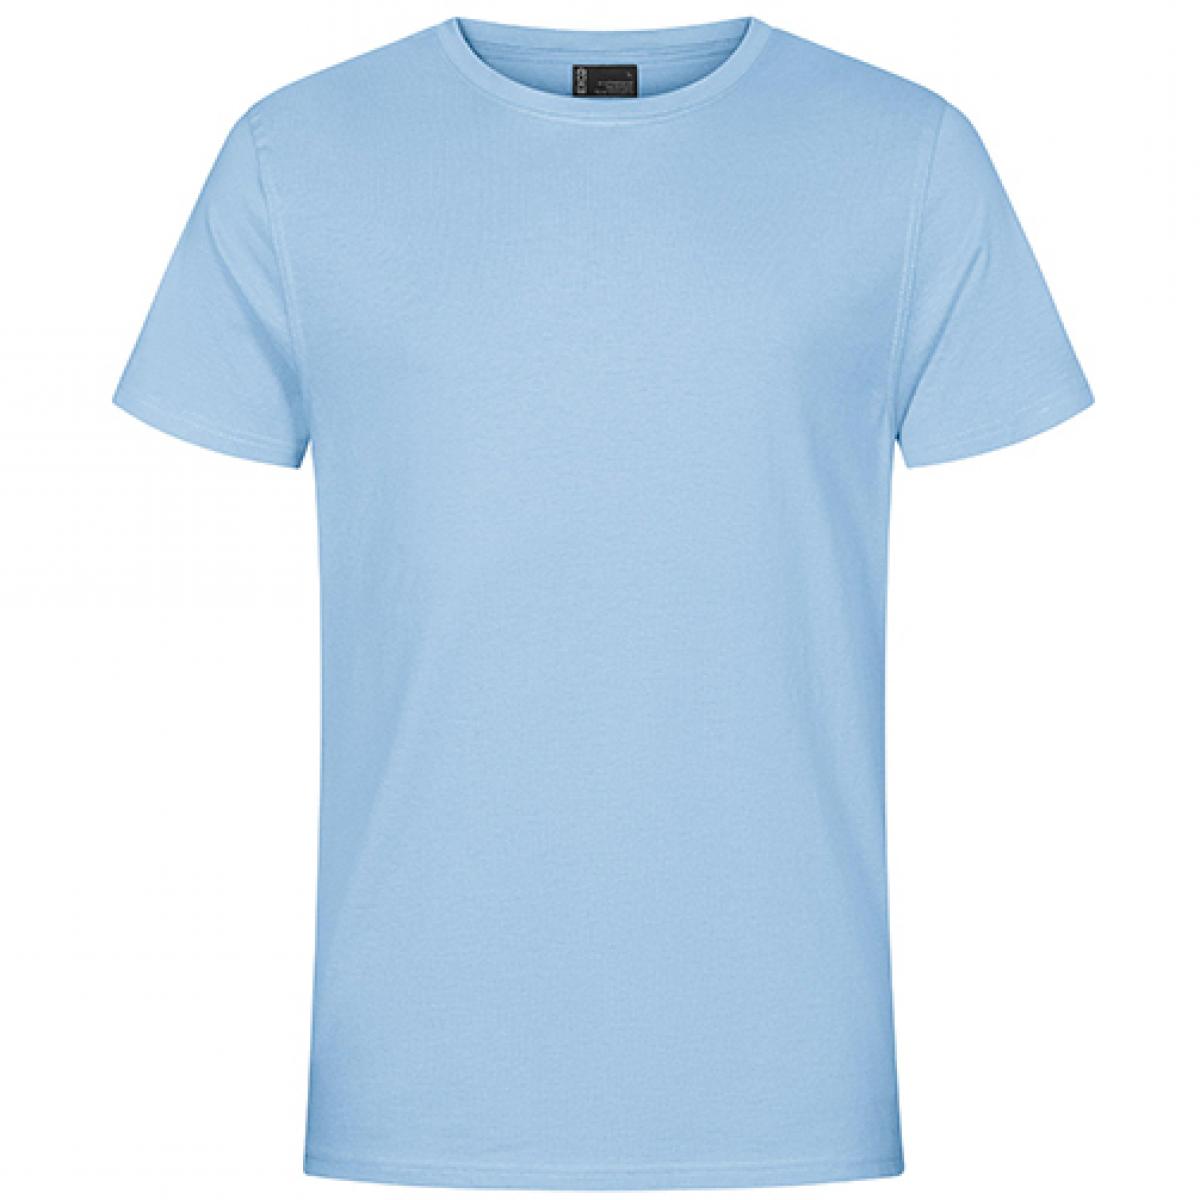 Hersteller: EXCD by Promodoro Herstellernummer: 3077 Artikelbezeichnung: Herren T-Shirt, Single-Jersey Farbe: Ice Blue